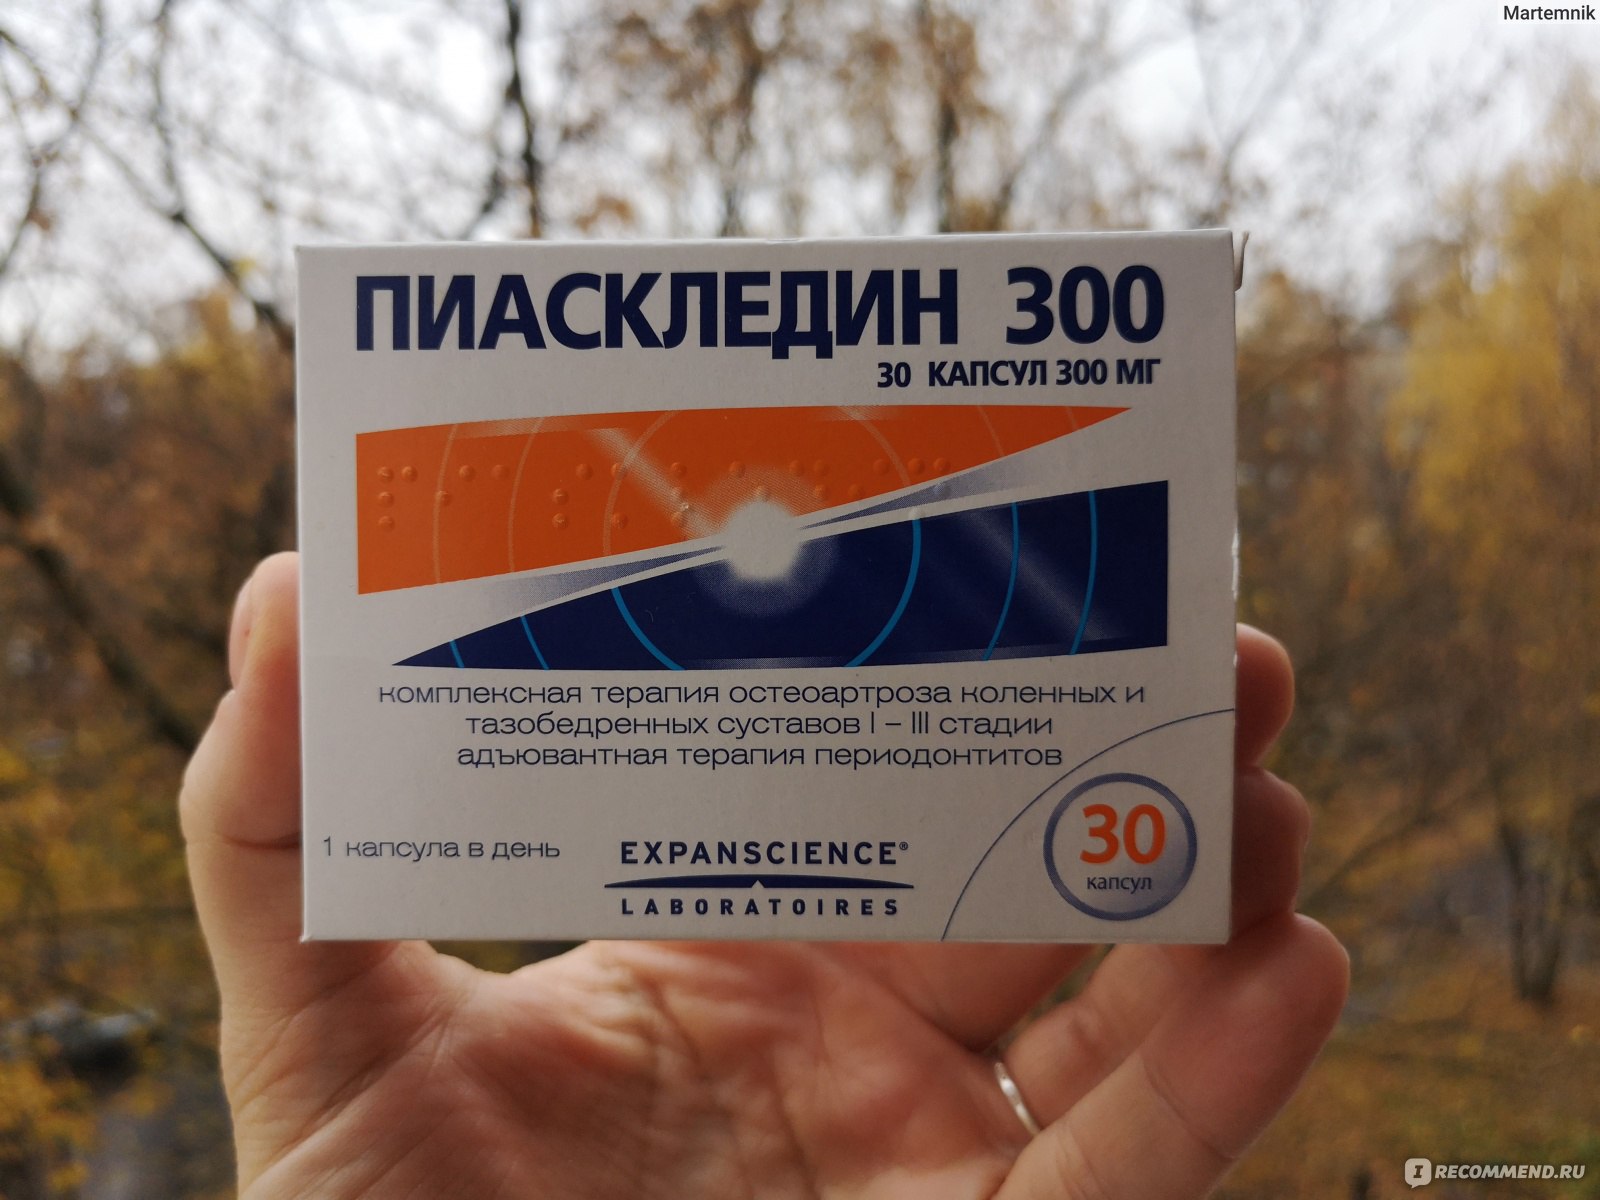 Лекарственный препарат Expanscience Пиаскледин 300 - «Хондропротектор .